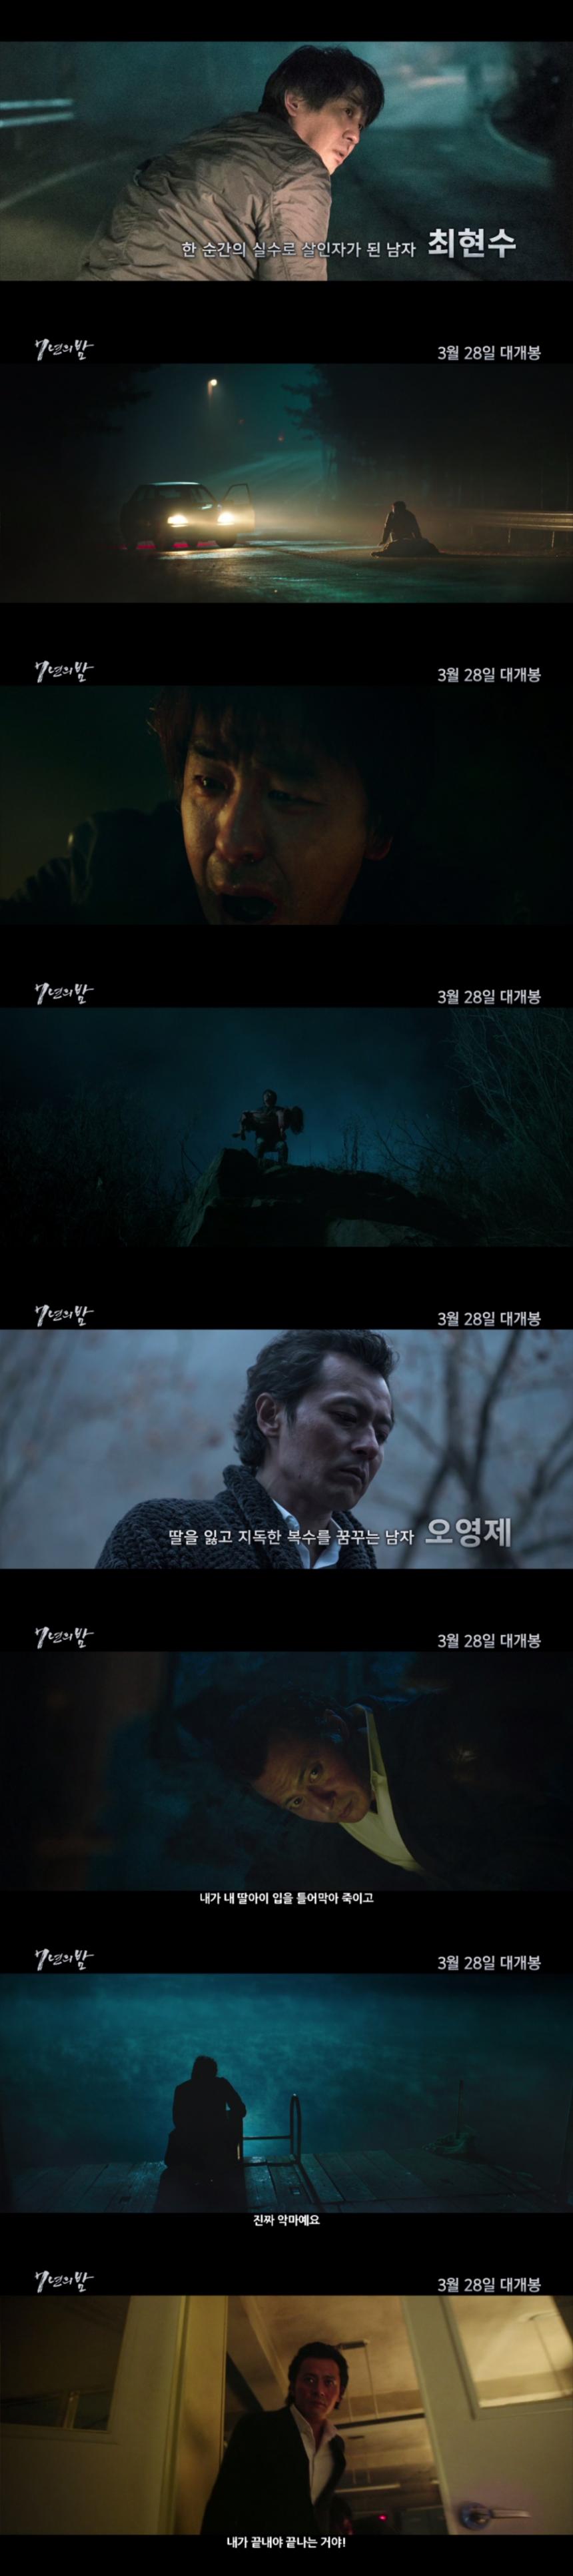 ‘7년의 밤’ 캐릭터 영상 / CJ엔터테인먼트